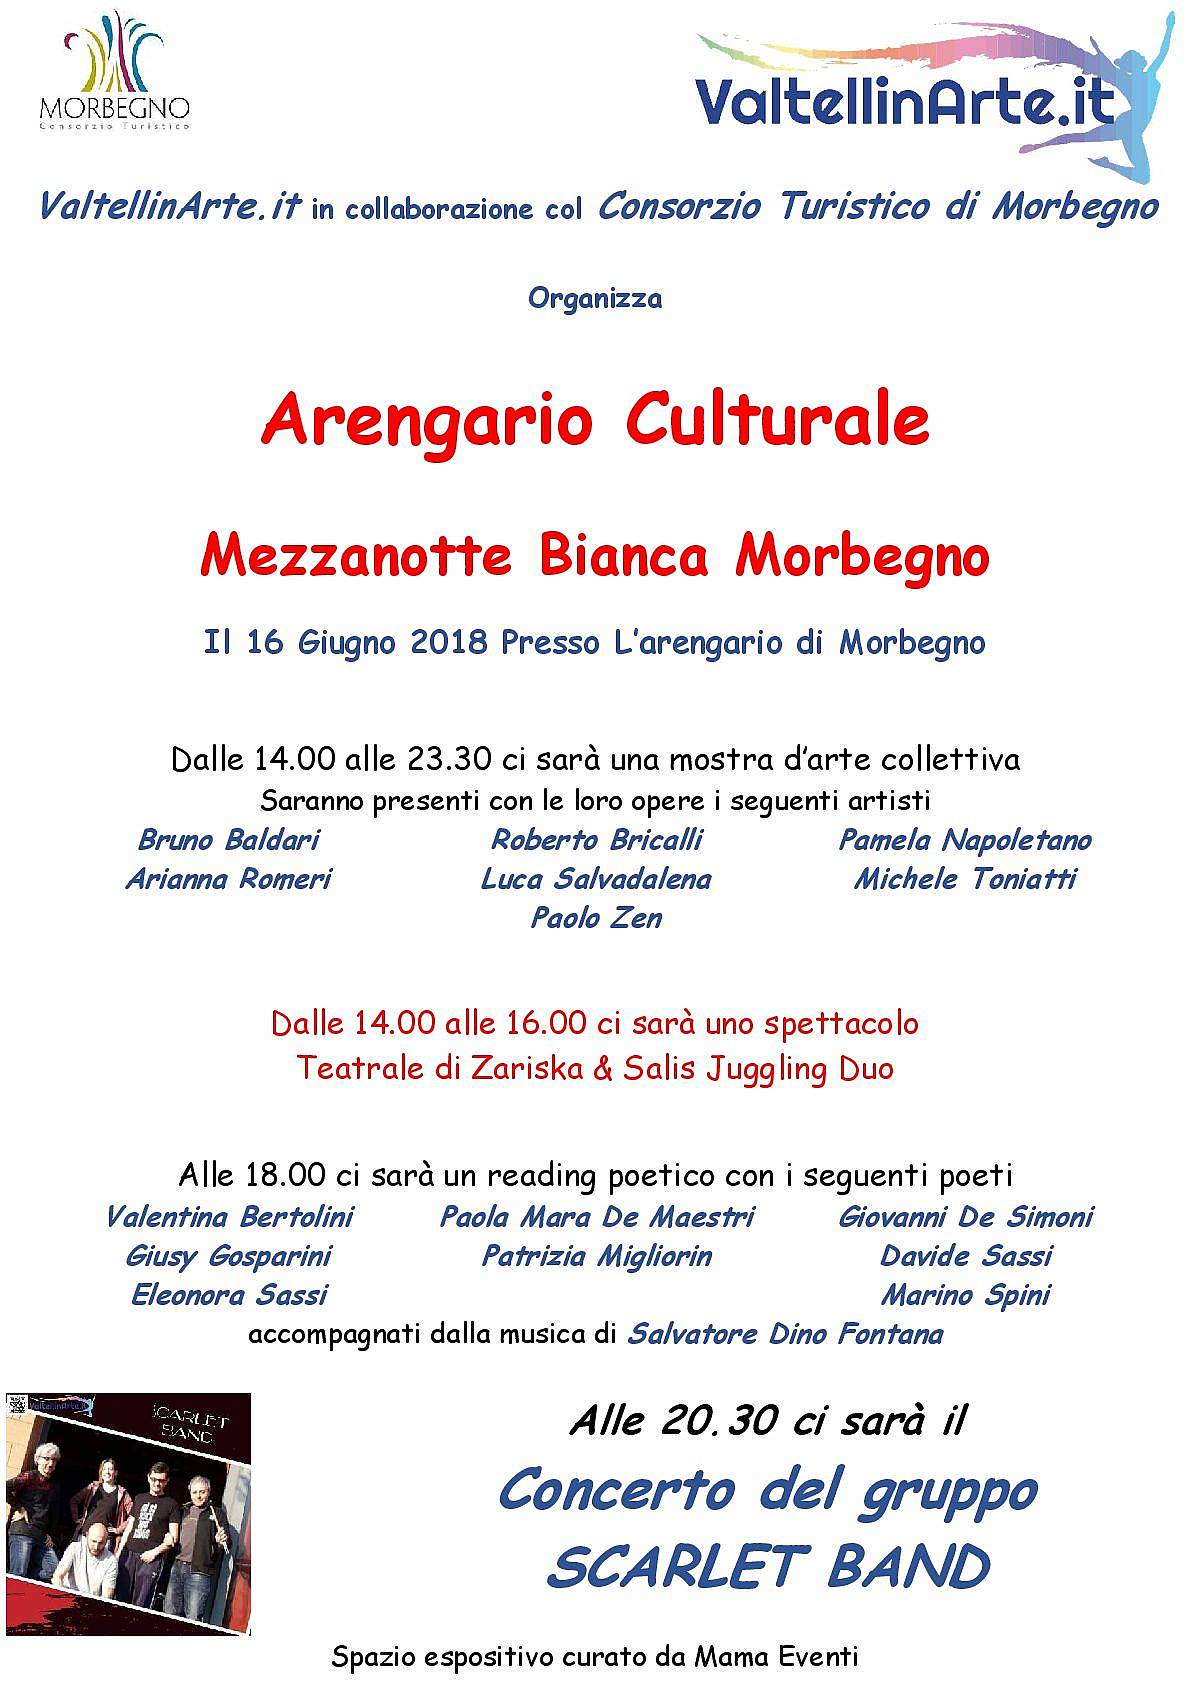 Arengario Culturale - Mezzanotte Bianca Morbegno - organizzato da  ValtellinArte